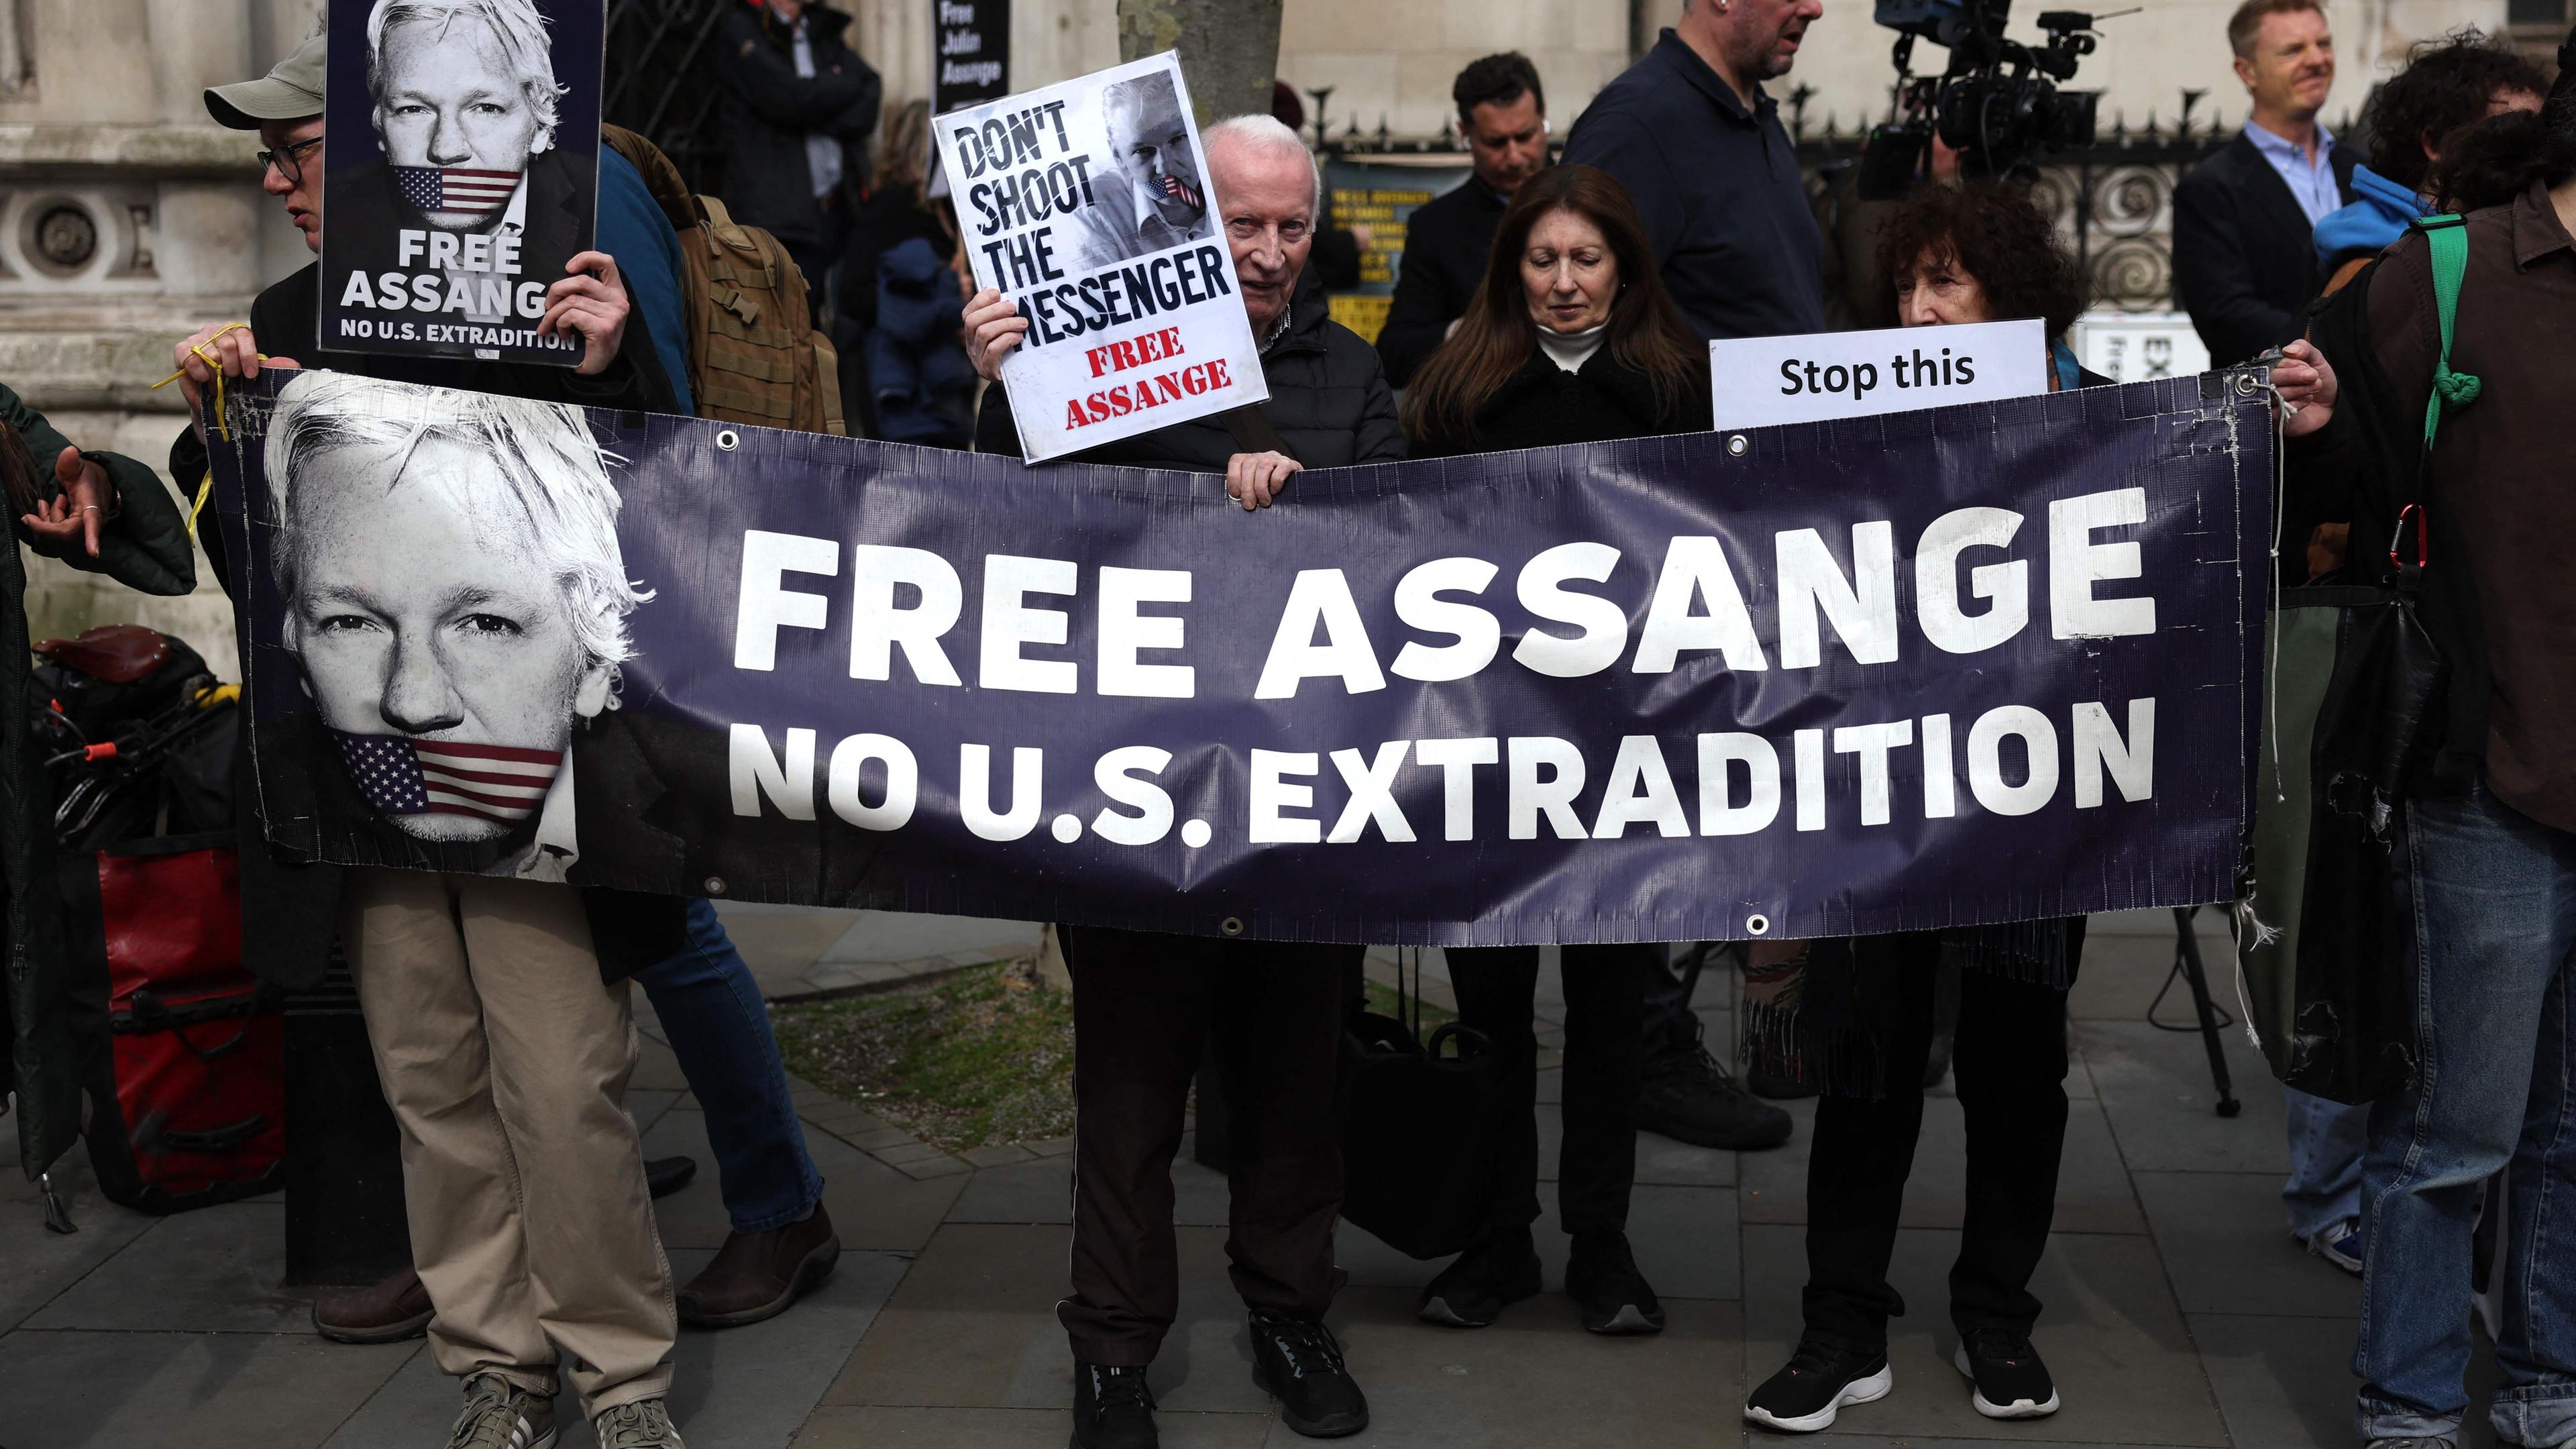 Demonstrierende vor dem Gebäude des Londoner High Court, die ein Banner mit der Aufschrift "Free Assange" tragen.